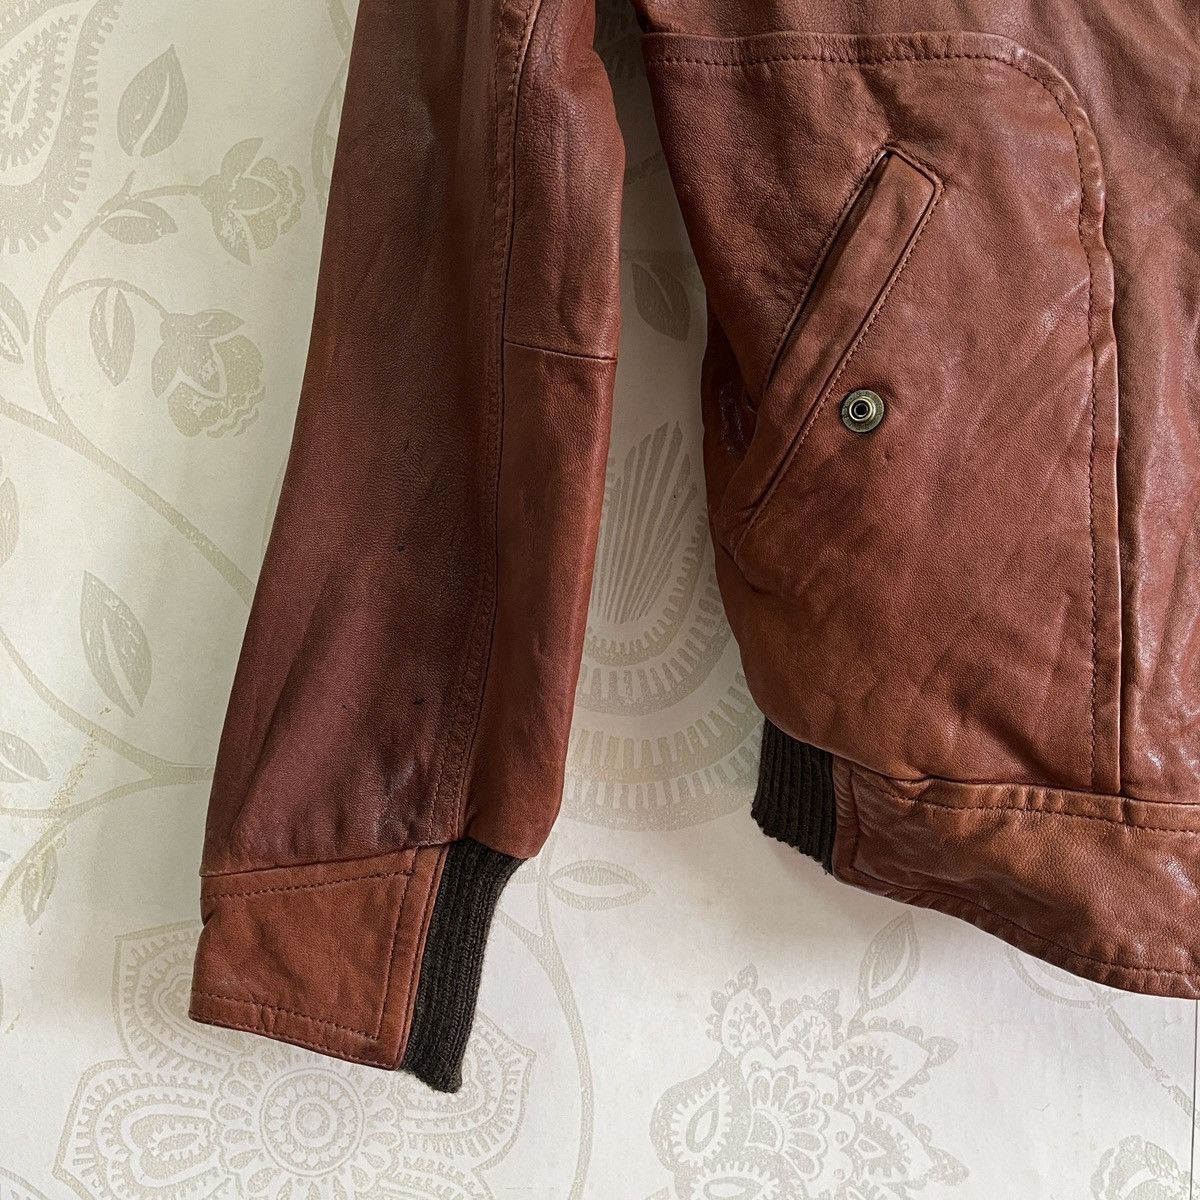 Seditionaries - Bondage Pas De Calais Sheepskin Leather Jacket Size 38 - 9